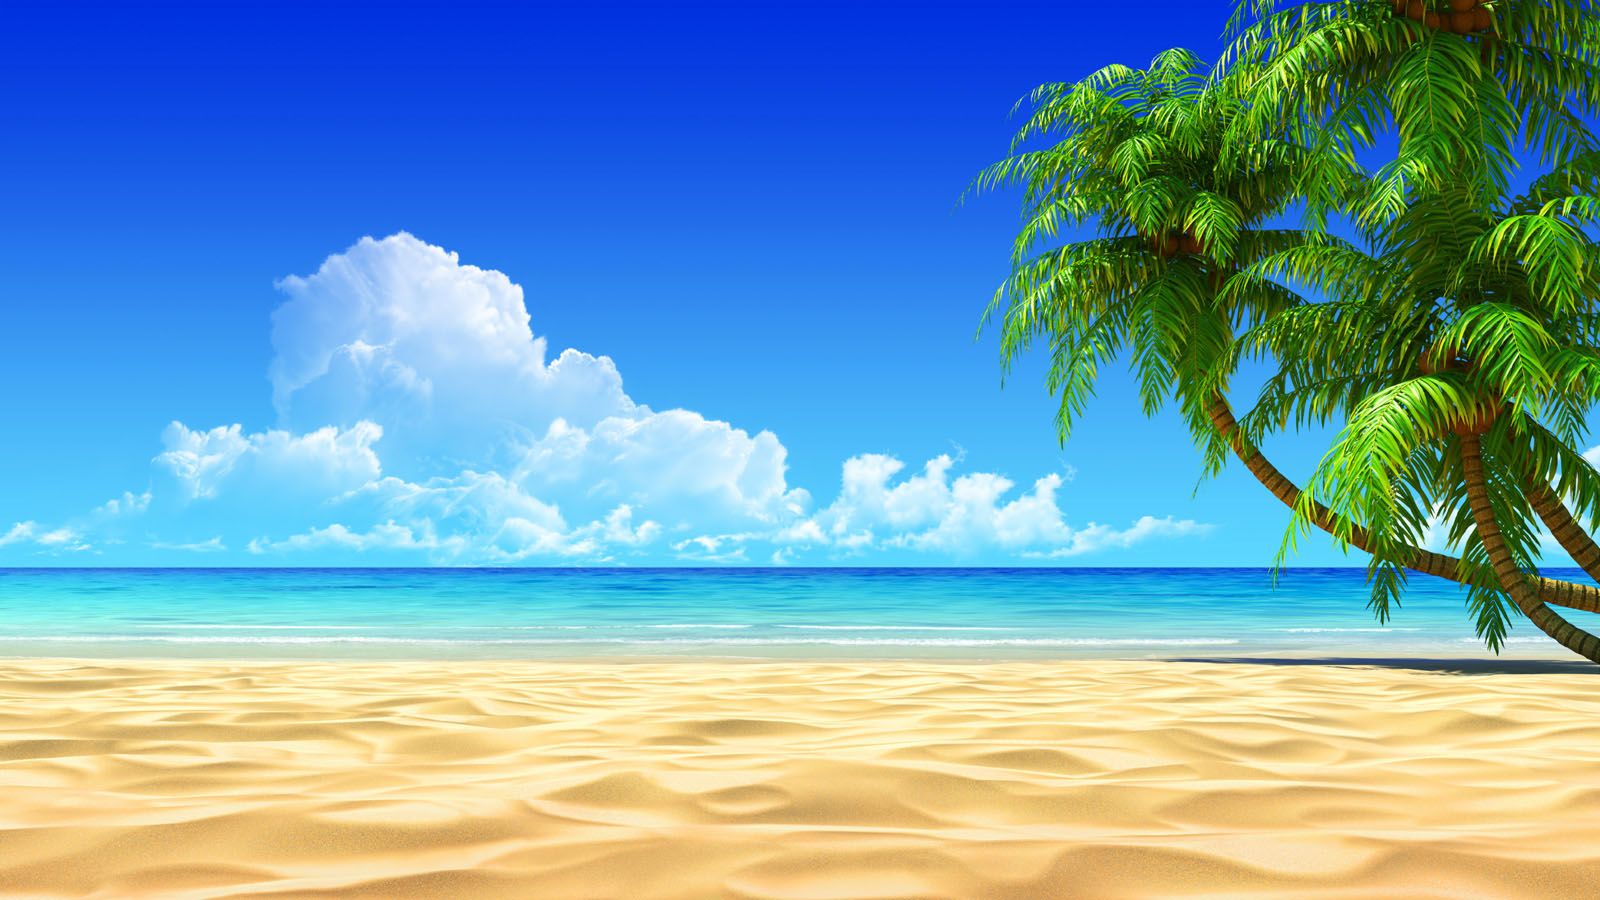 Fondos de pantalla de playas hermosas - FondosMil